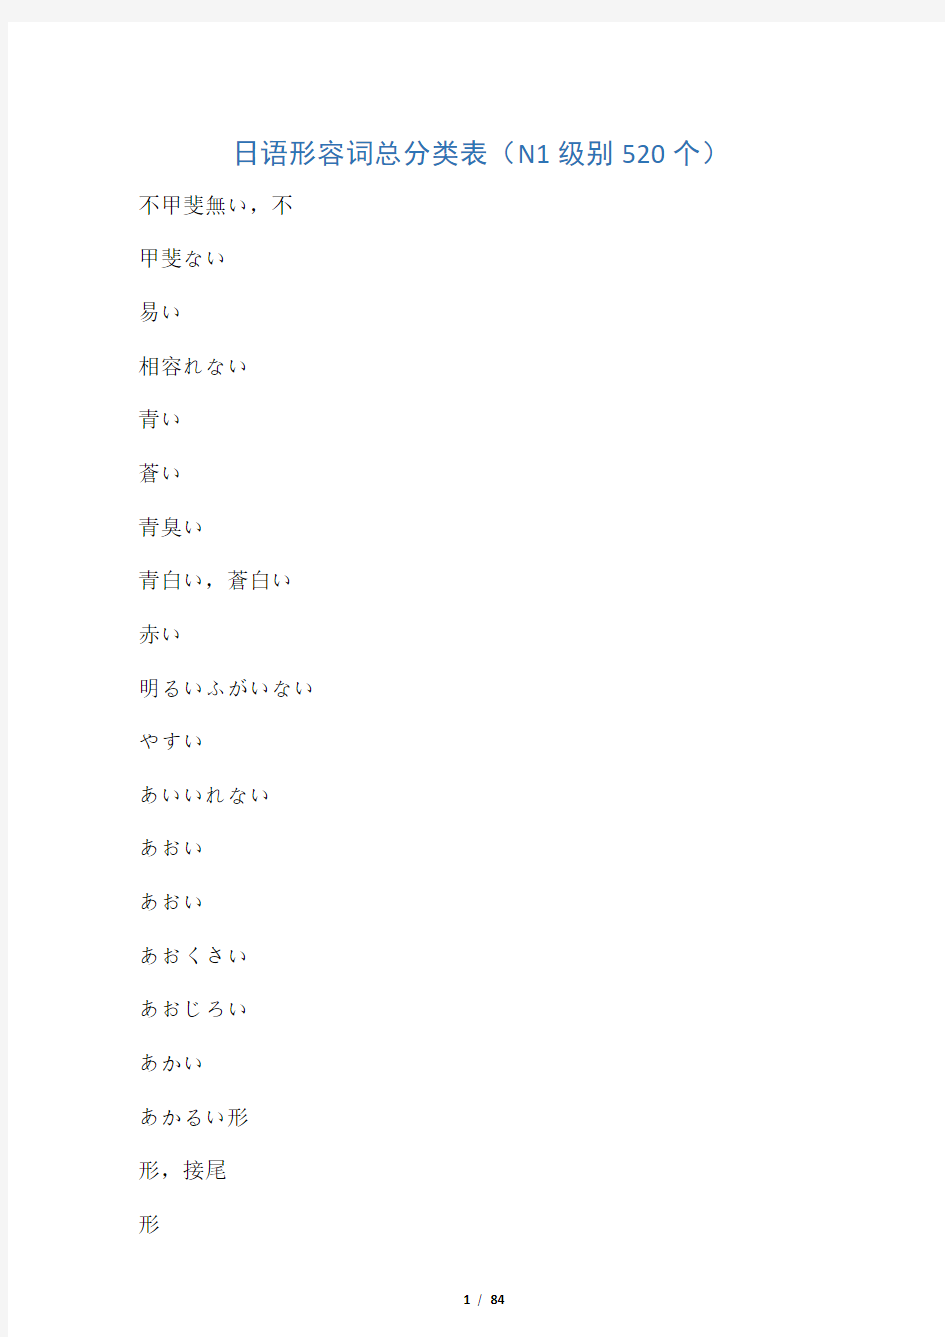 日语形容词汇总分类表(N1级别,包括N1-N4所有形容词)